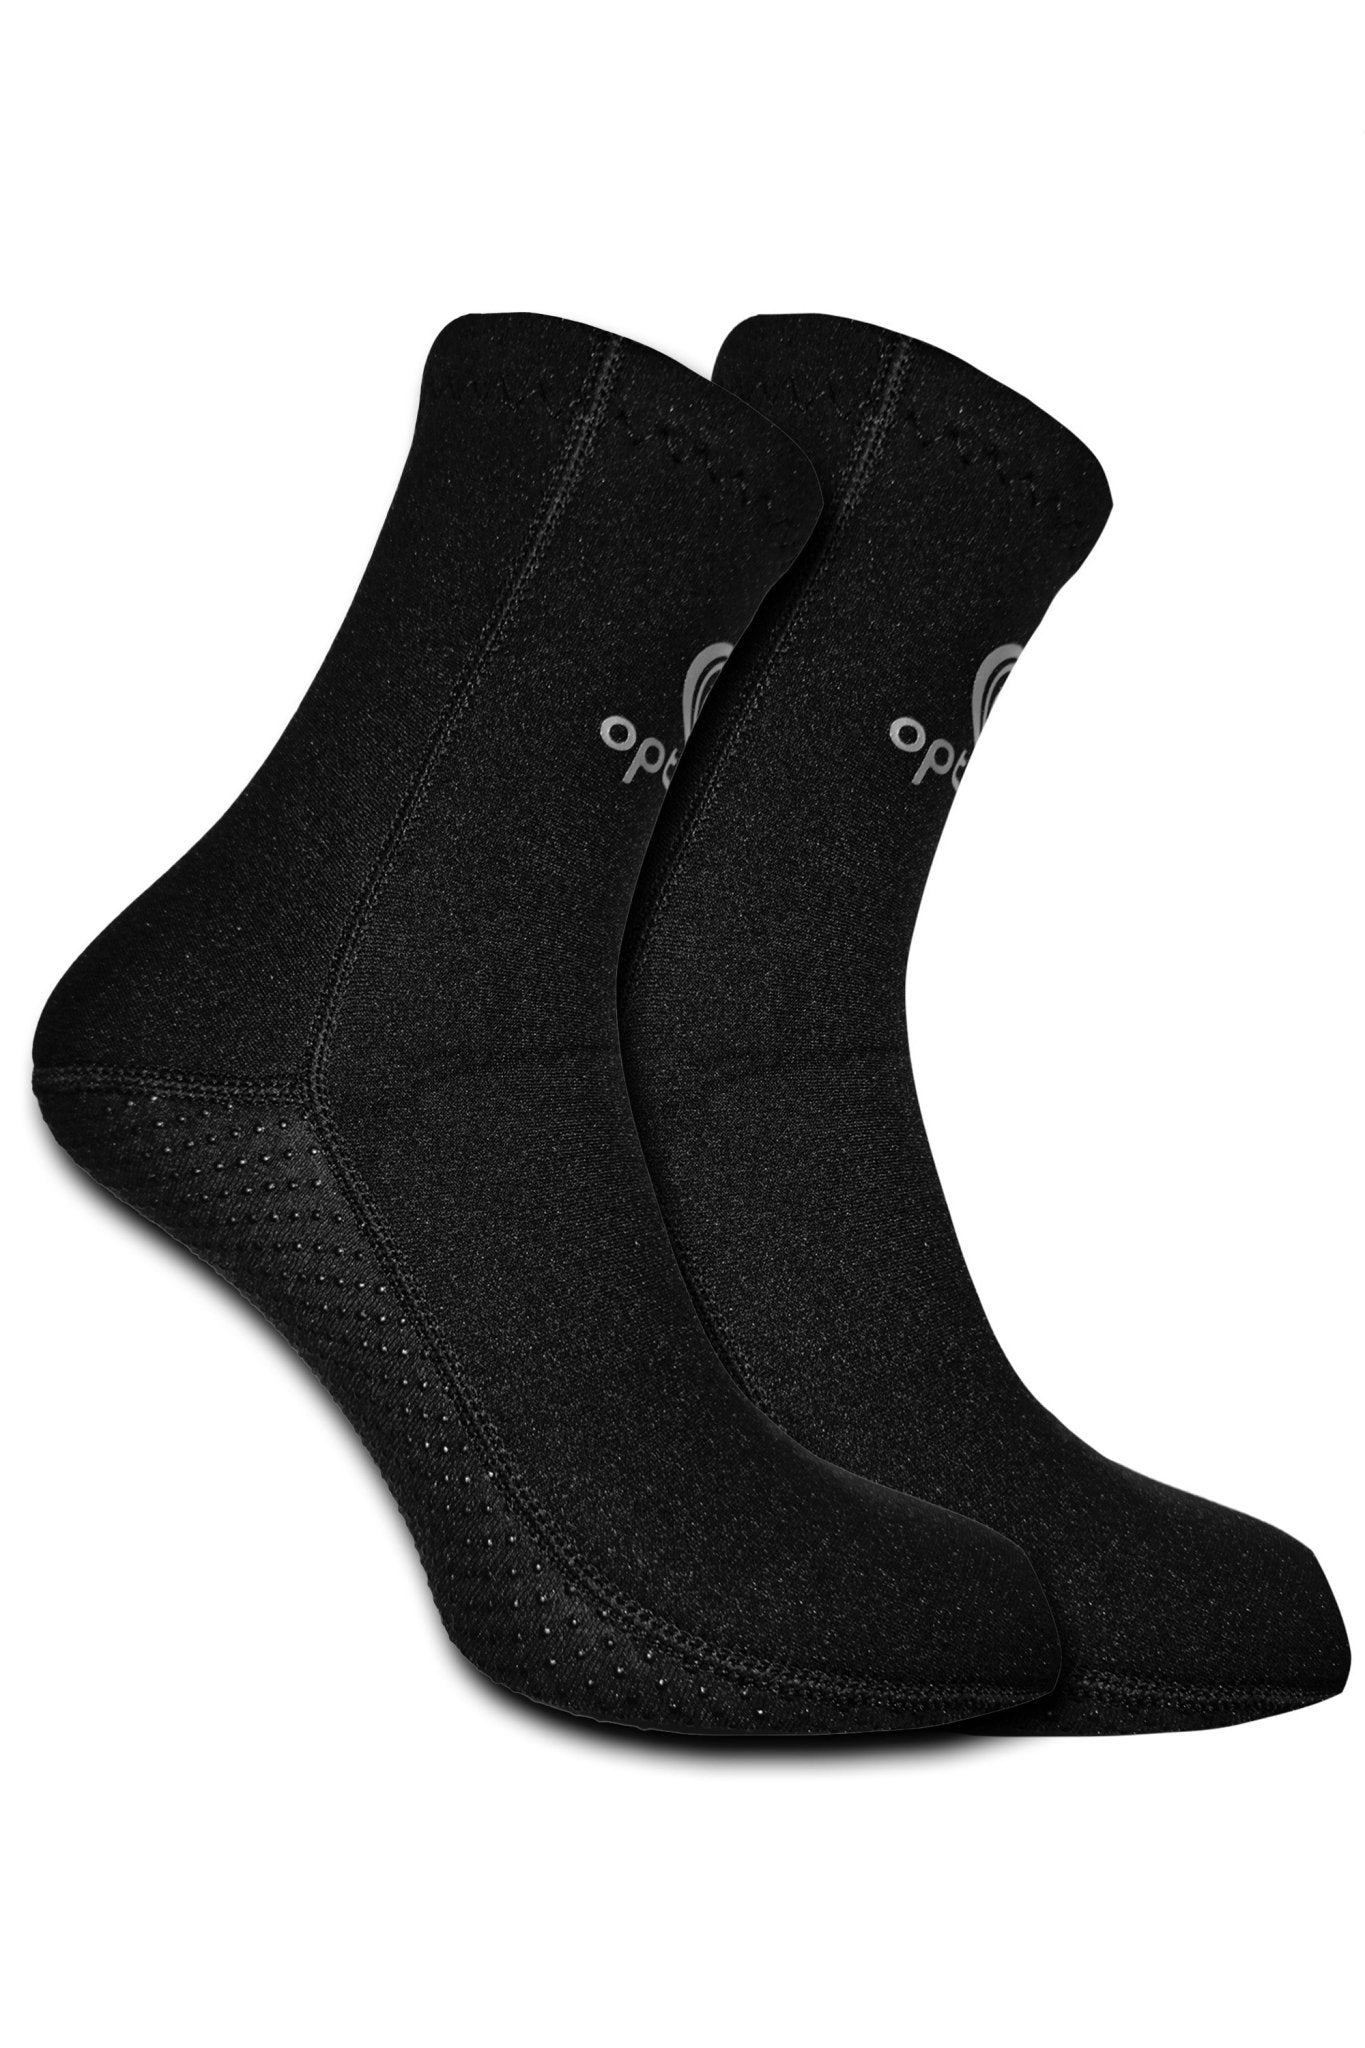 Optimum Wetsuit Neoprene Socks, 3mm Surfing, Diving, Kayaking, Water Sport Anti Slip Diving Socks for Men and Women - Optimum